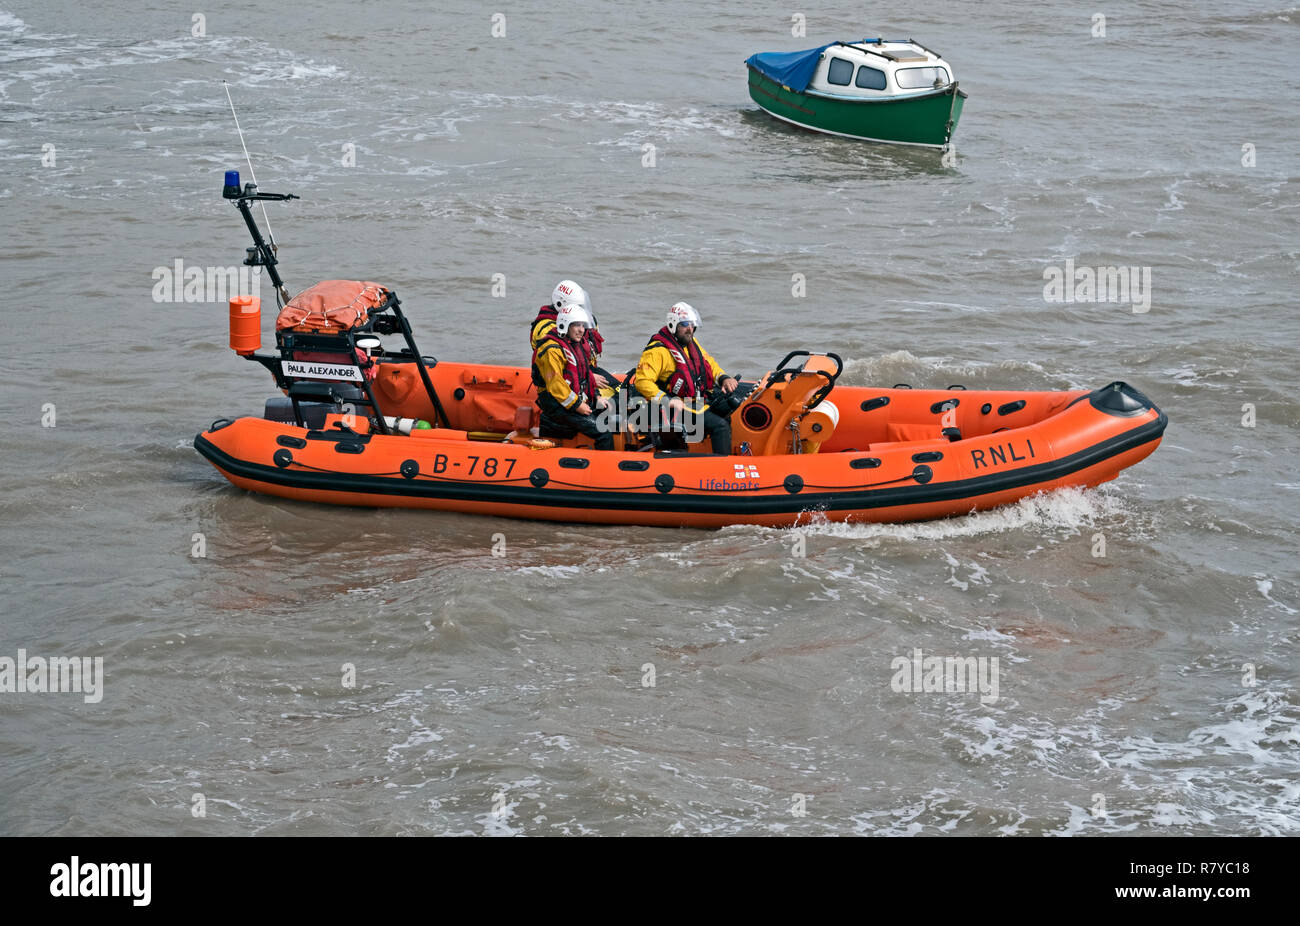 El Atlántico 75 clase Paul Alexander de botes salvavidas en el mar durante la anual Jornada abierta RNLI en Weston-super-Mare, Reino Unido el 19 de agosto de 2018. Foto de stock